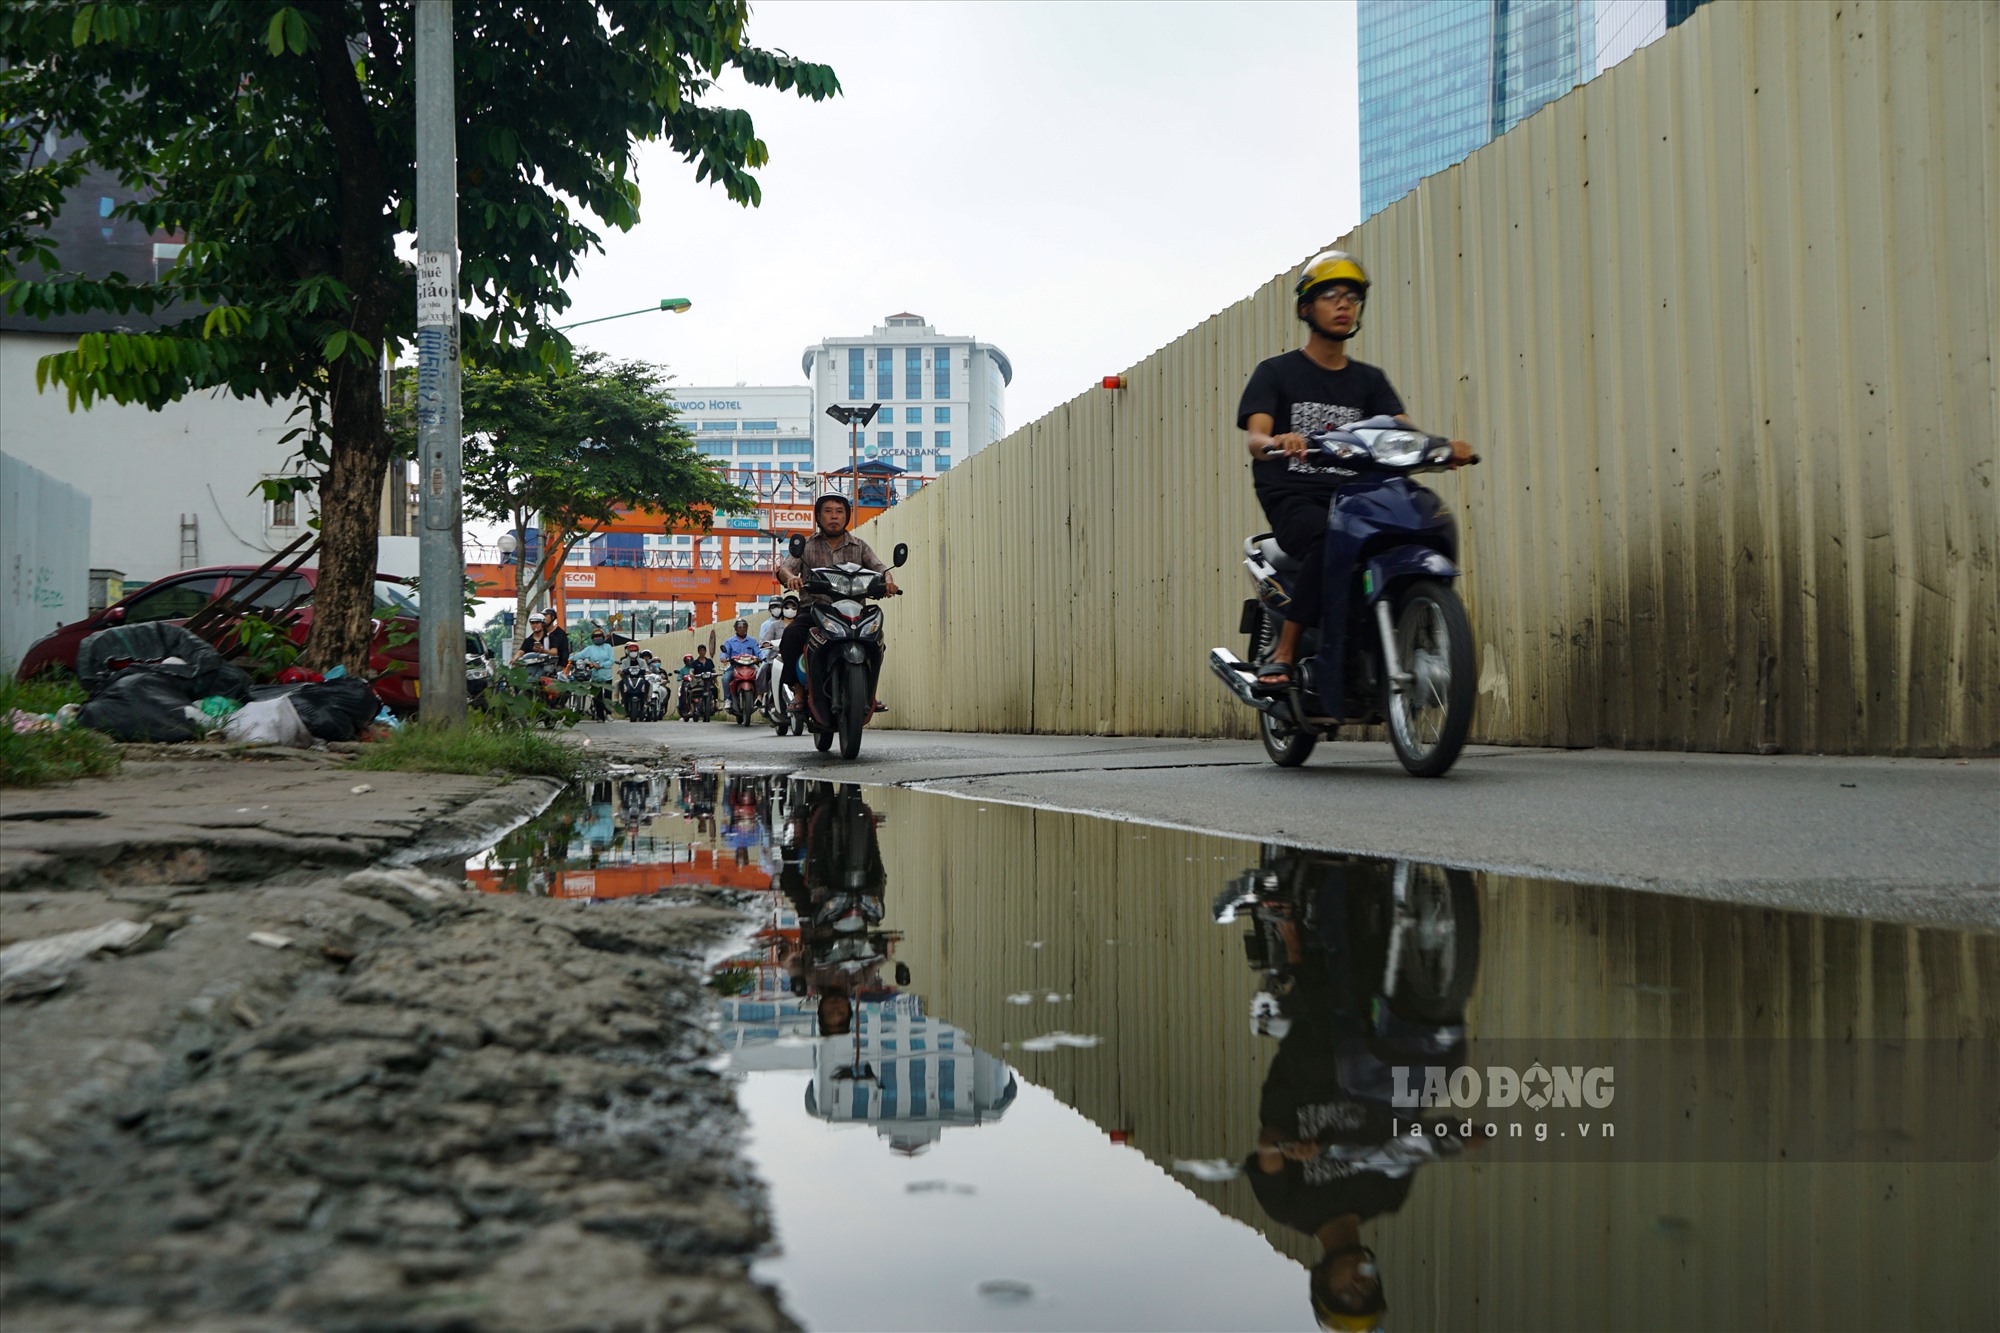 Tại ga S9 Kim Mã, phần lớn diện tích đường bị quây rào, phần đường còn lại hẹp, các phương tiện di chuyển rất khó khăn theo hướng vào trung tâm thành phố.